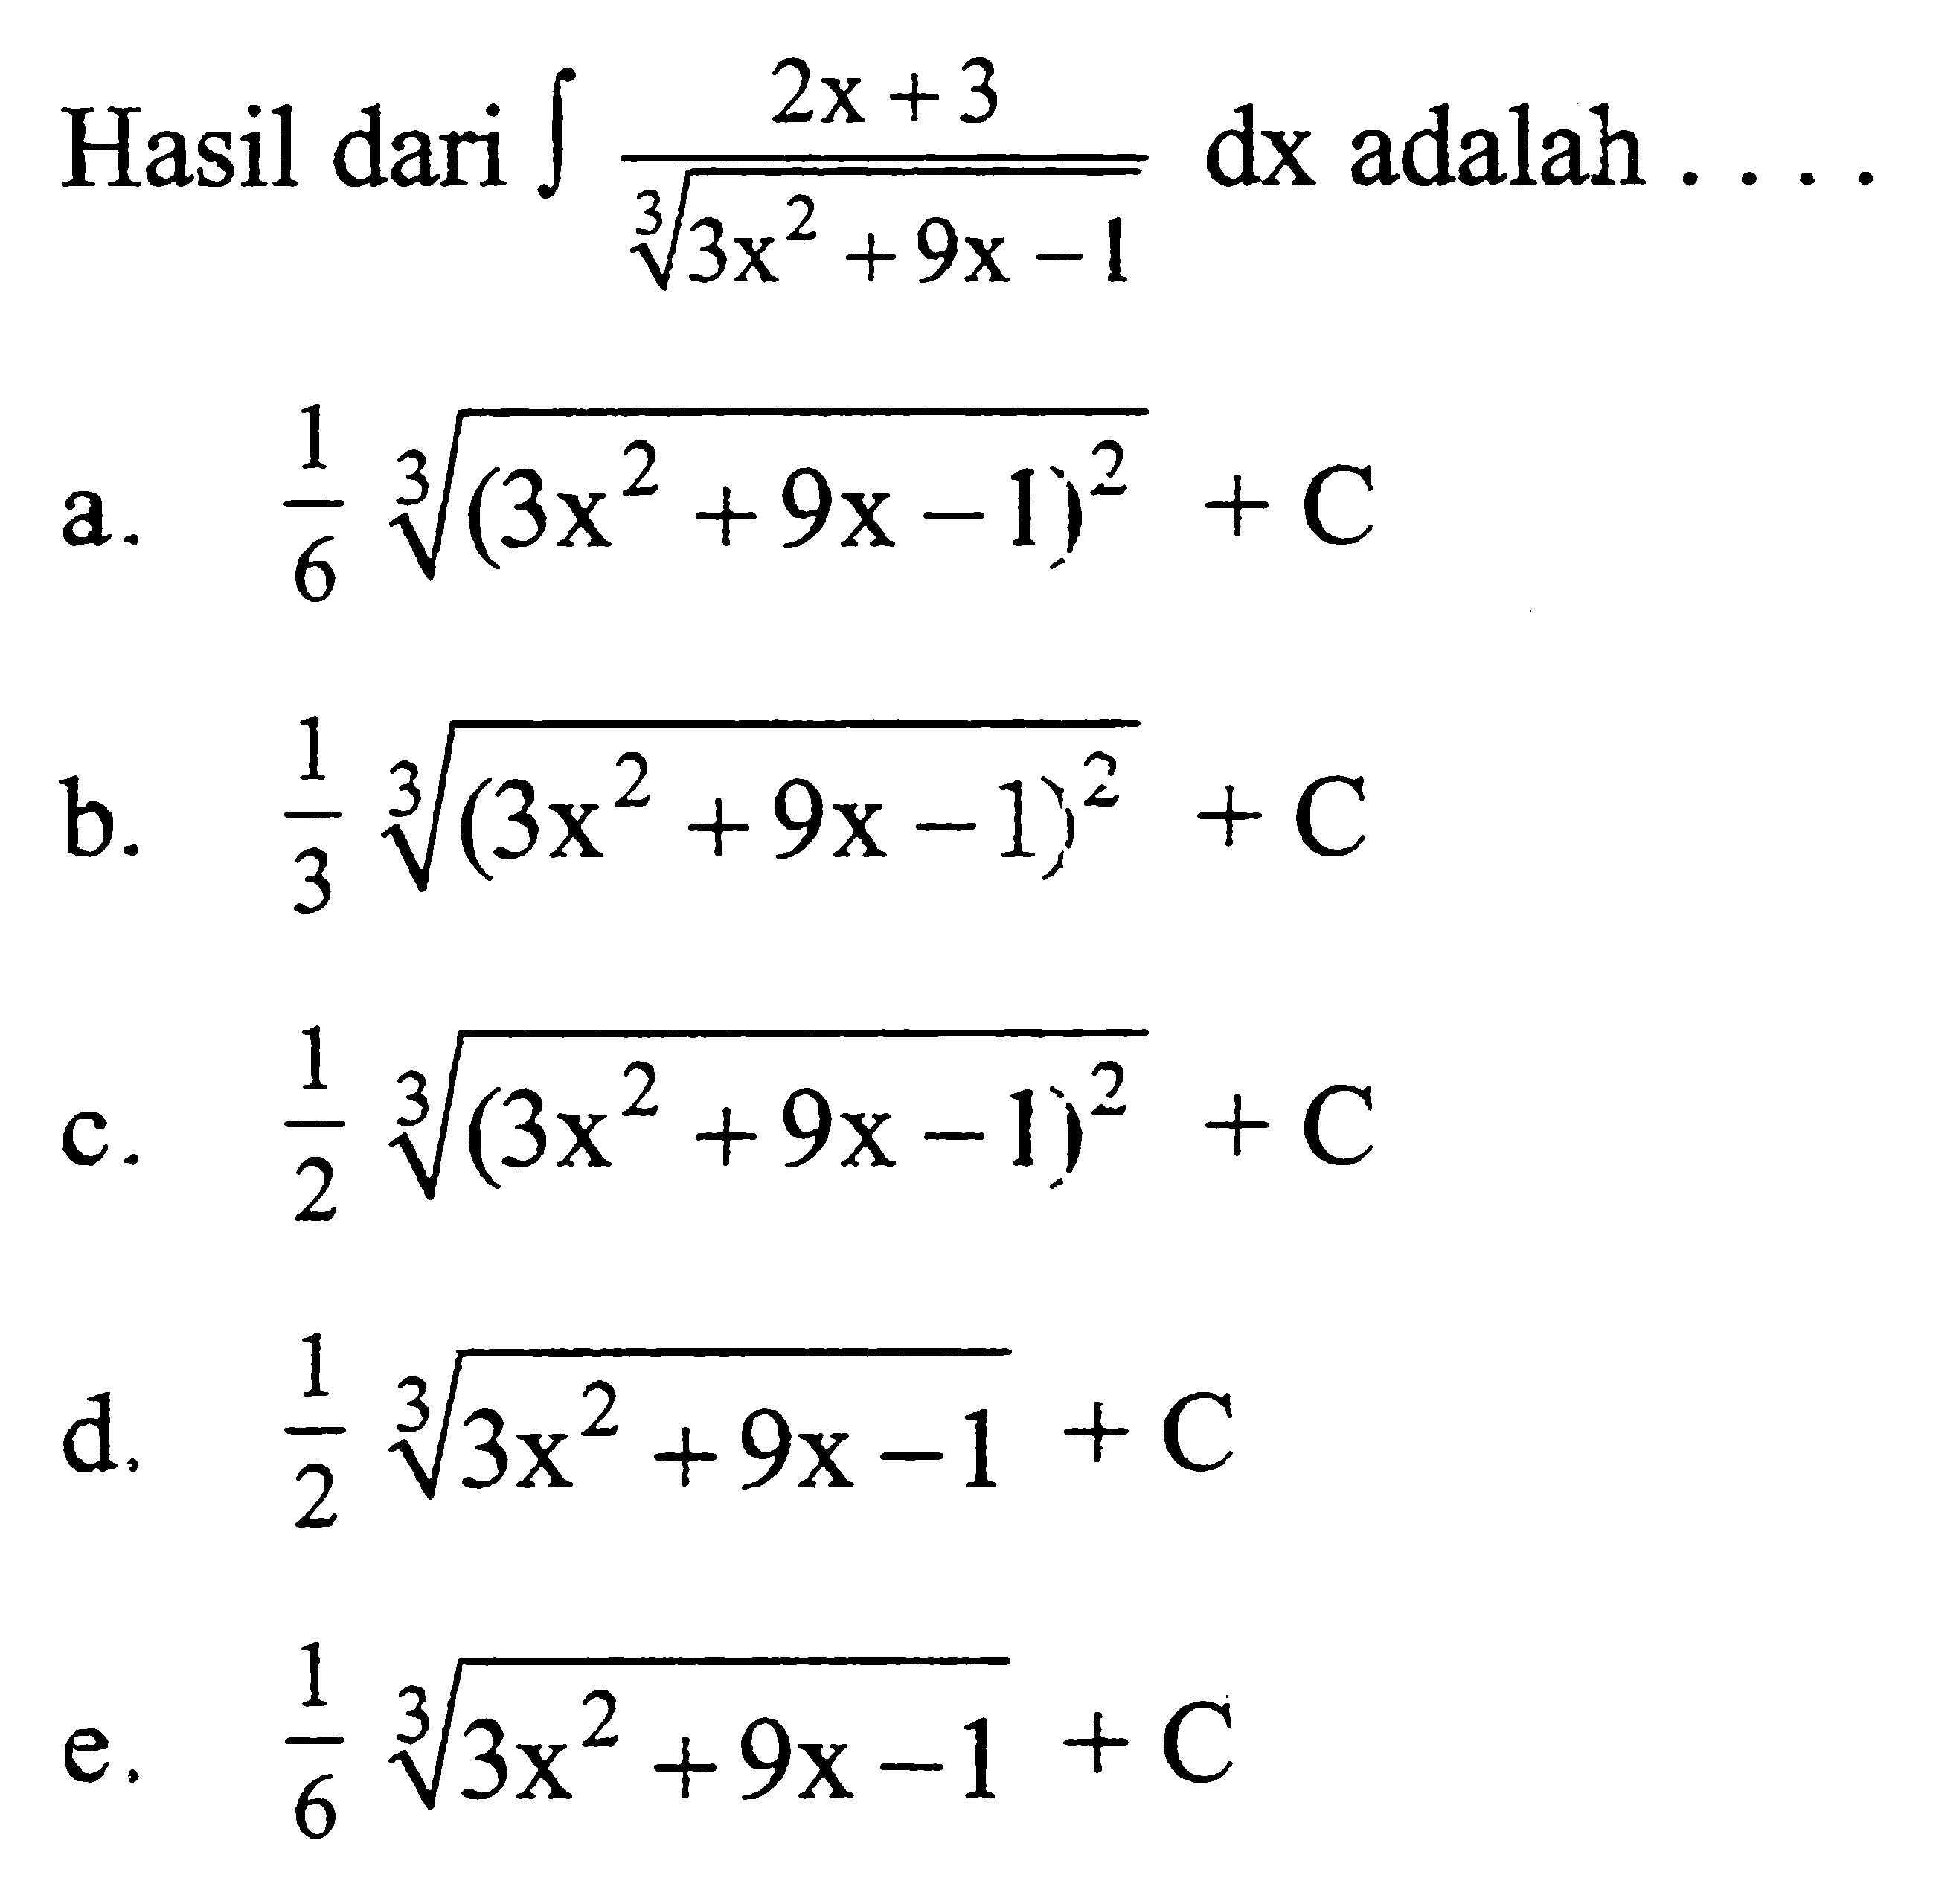 Hasil dari integral (2x+3)/(3x^2+9x-1)^(1/3) dx adalah ...